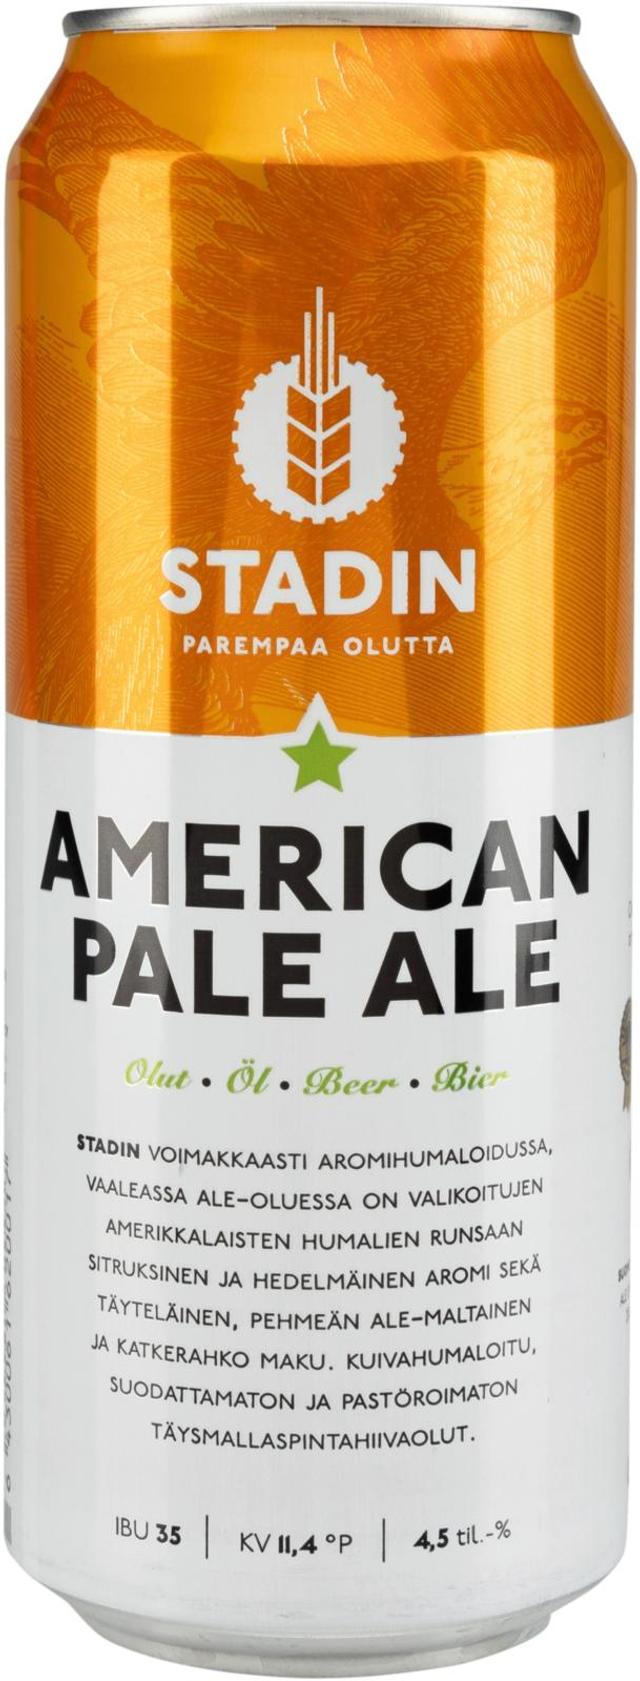 Stadin American Pale Ale 4,5% tlk Olut 0,5l